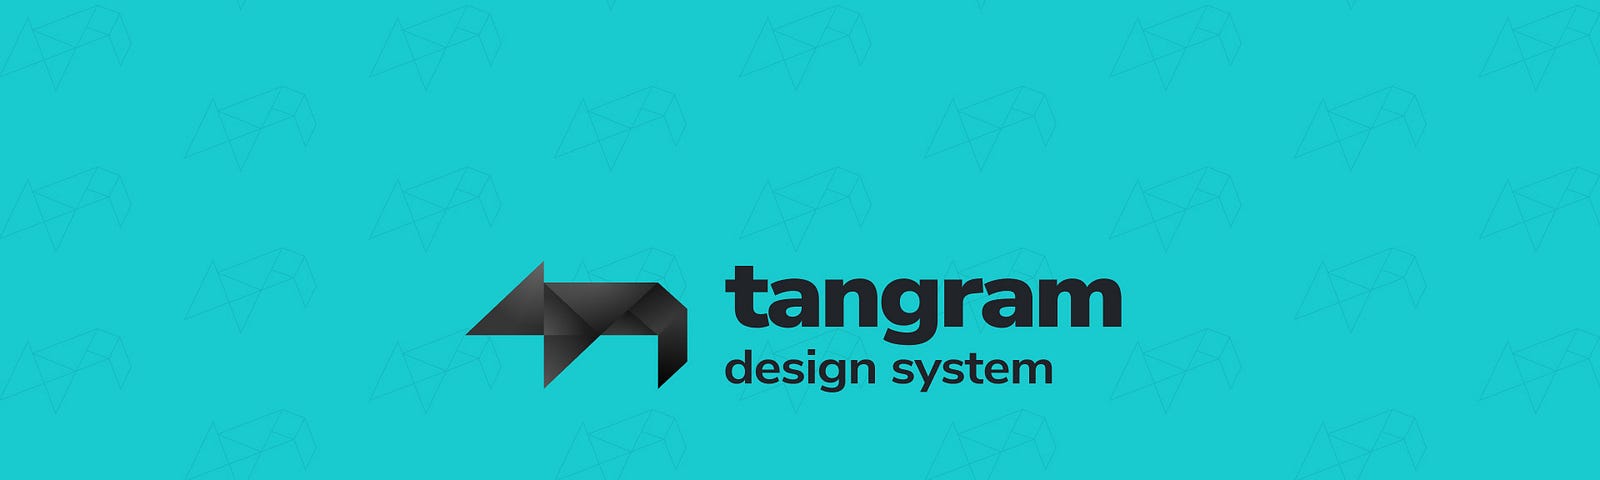 Logo do Tangram Design System: Uma representação de capivara, montada com as peças do jogo de quebra cabeça chamado tangram, jogo que deu origem ao nome do Design System.